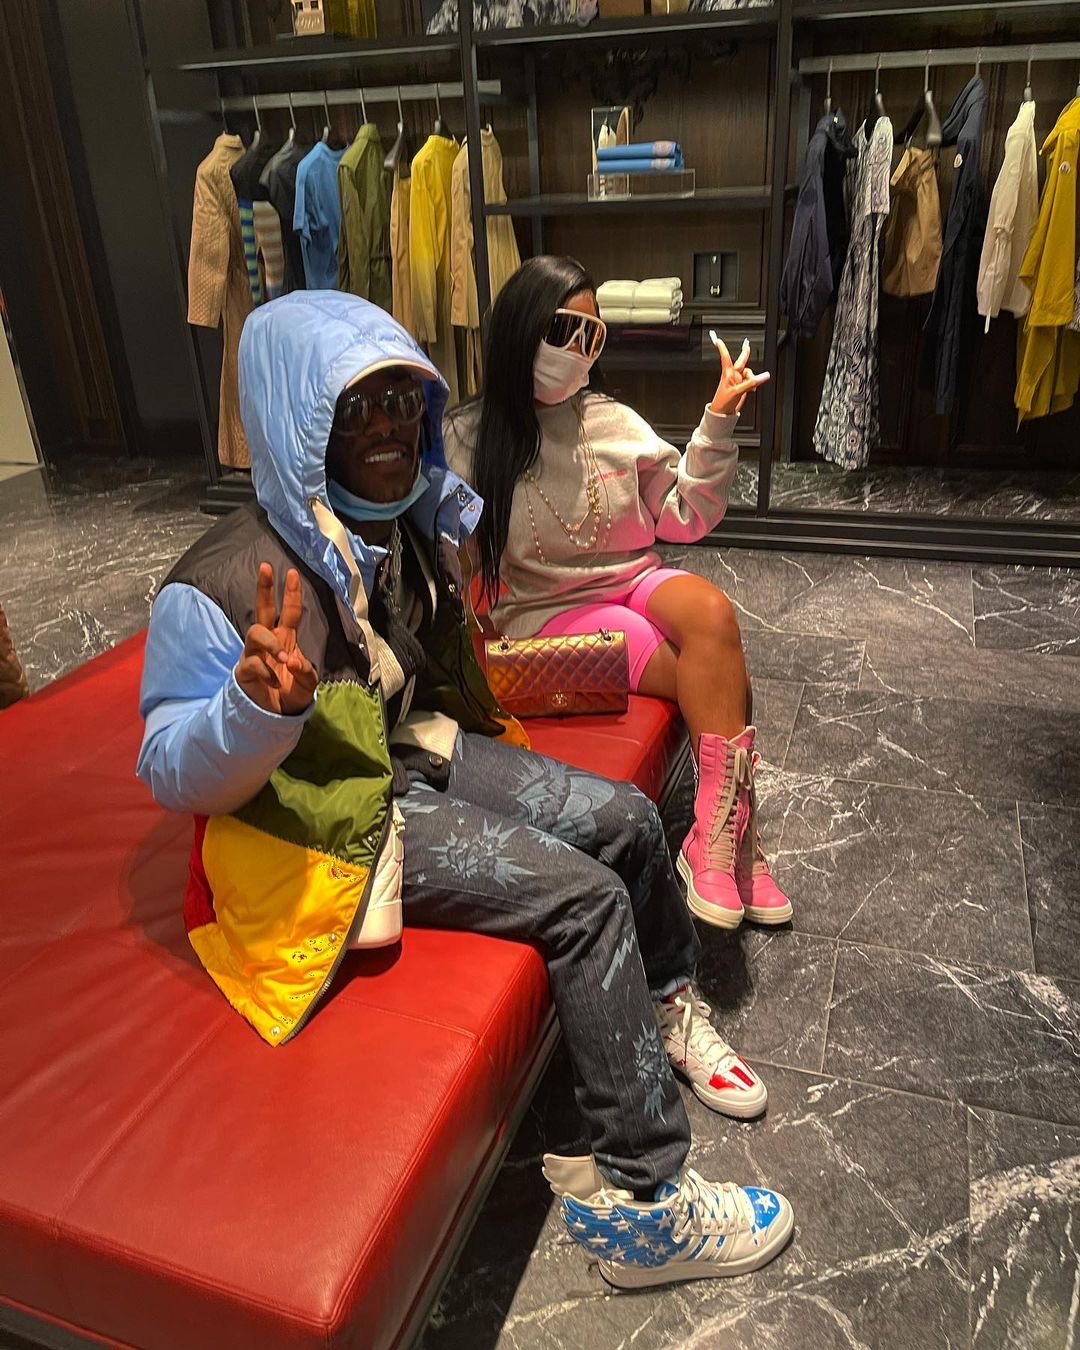 Wardrobe Inquiry: J.T. 's Lil Uzi Vert Shopping Trip Rick Owens